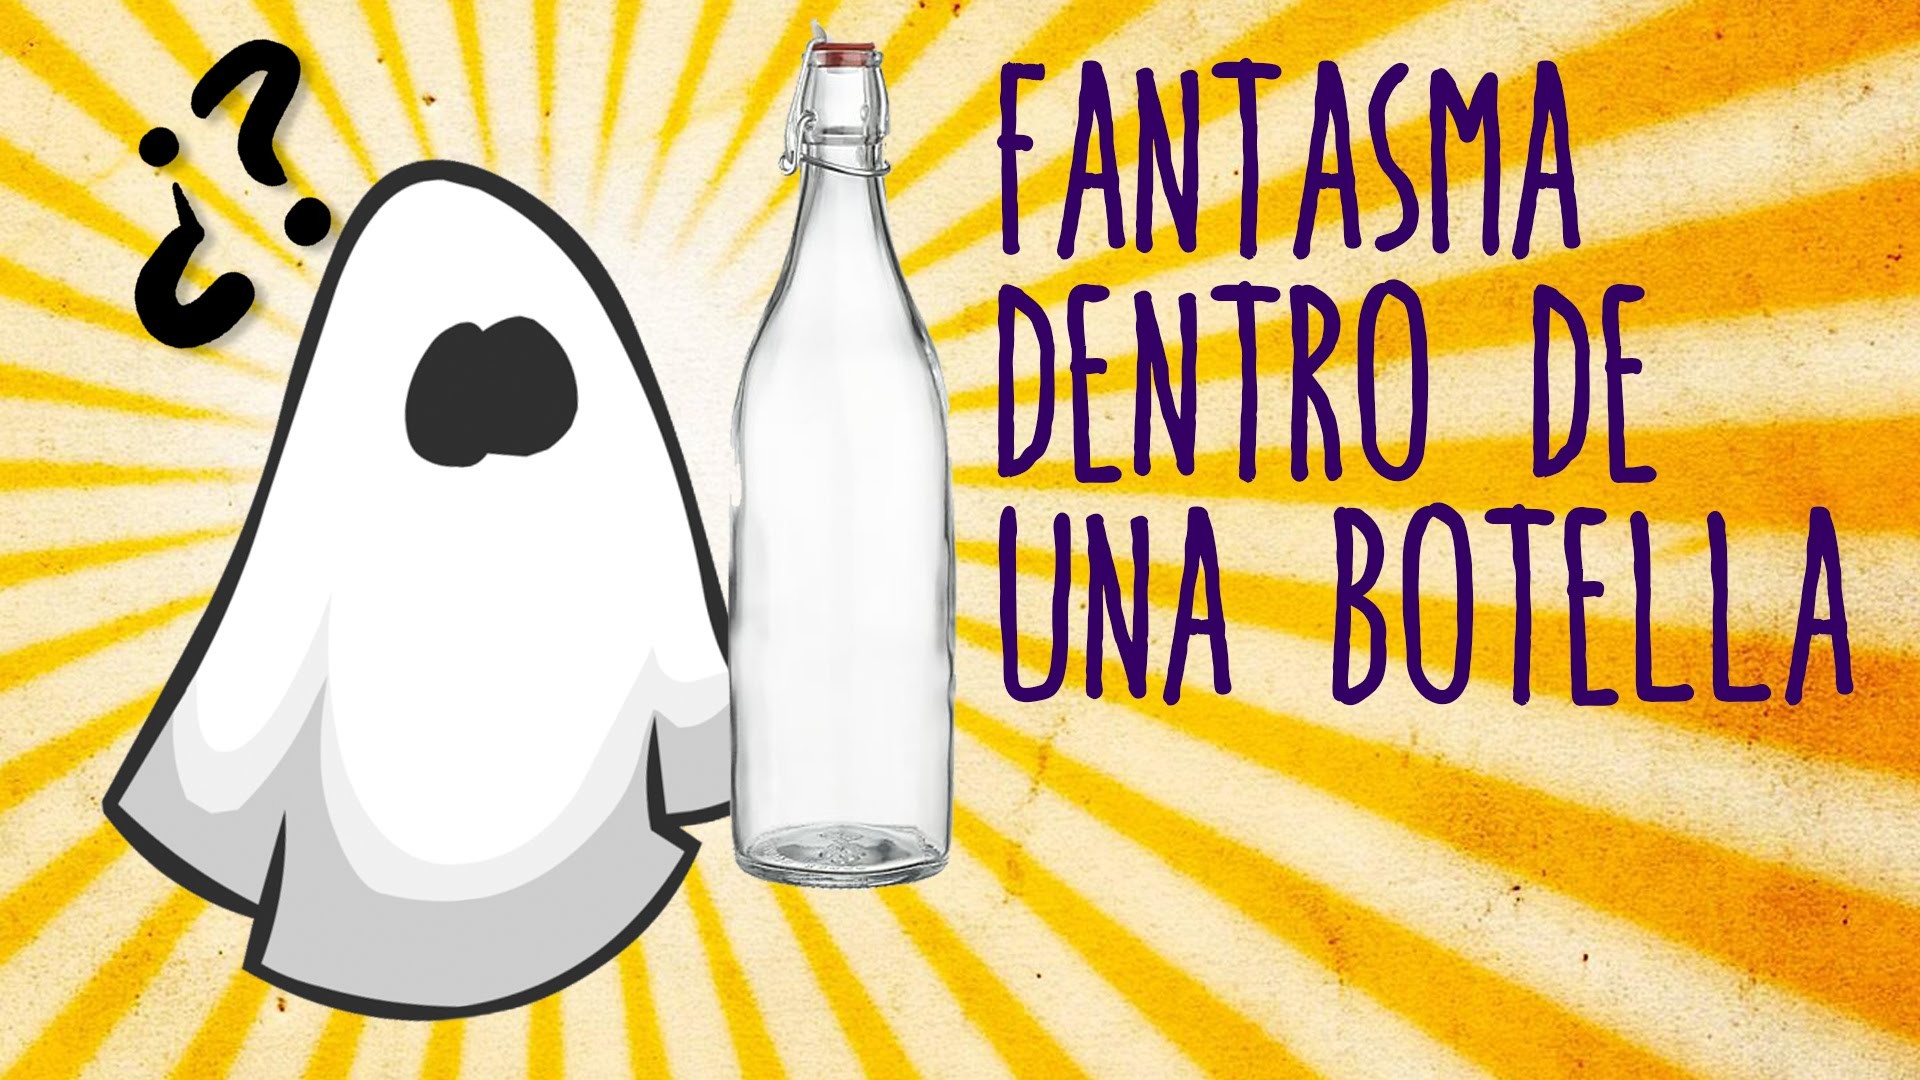 Fantasma atrapado en una botella (Halloween para niños)